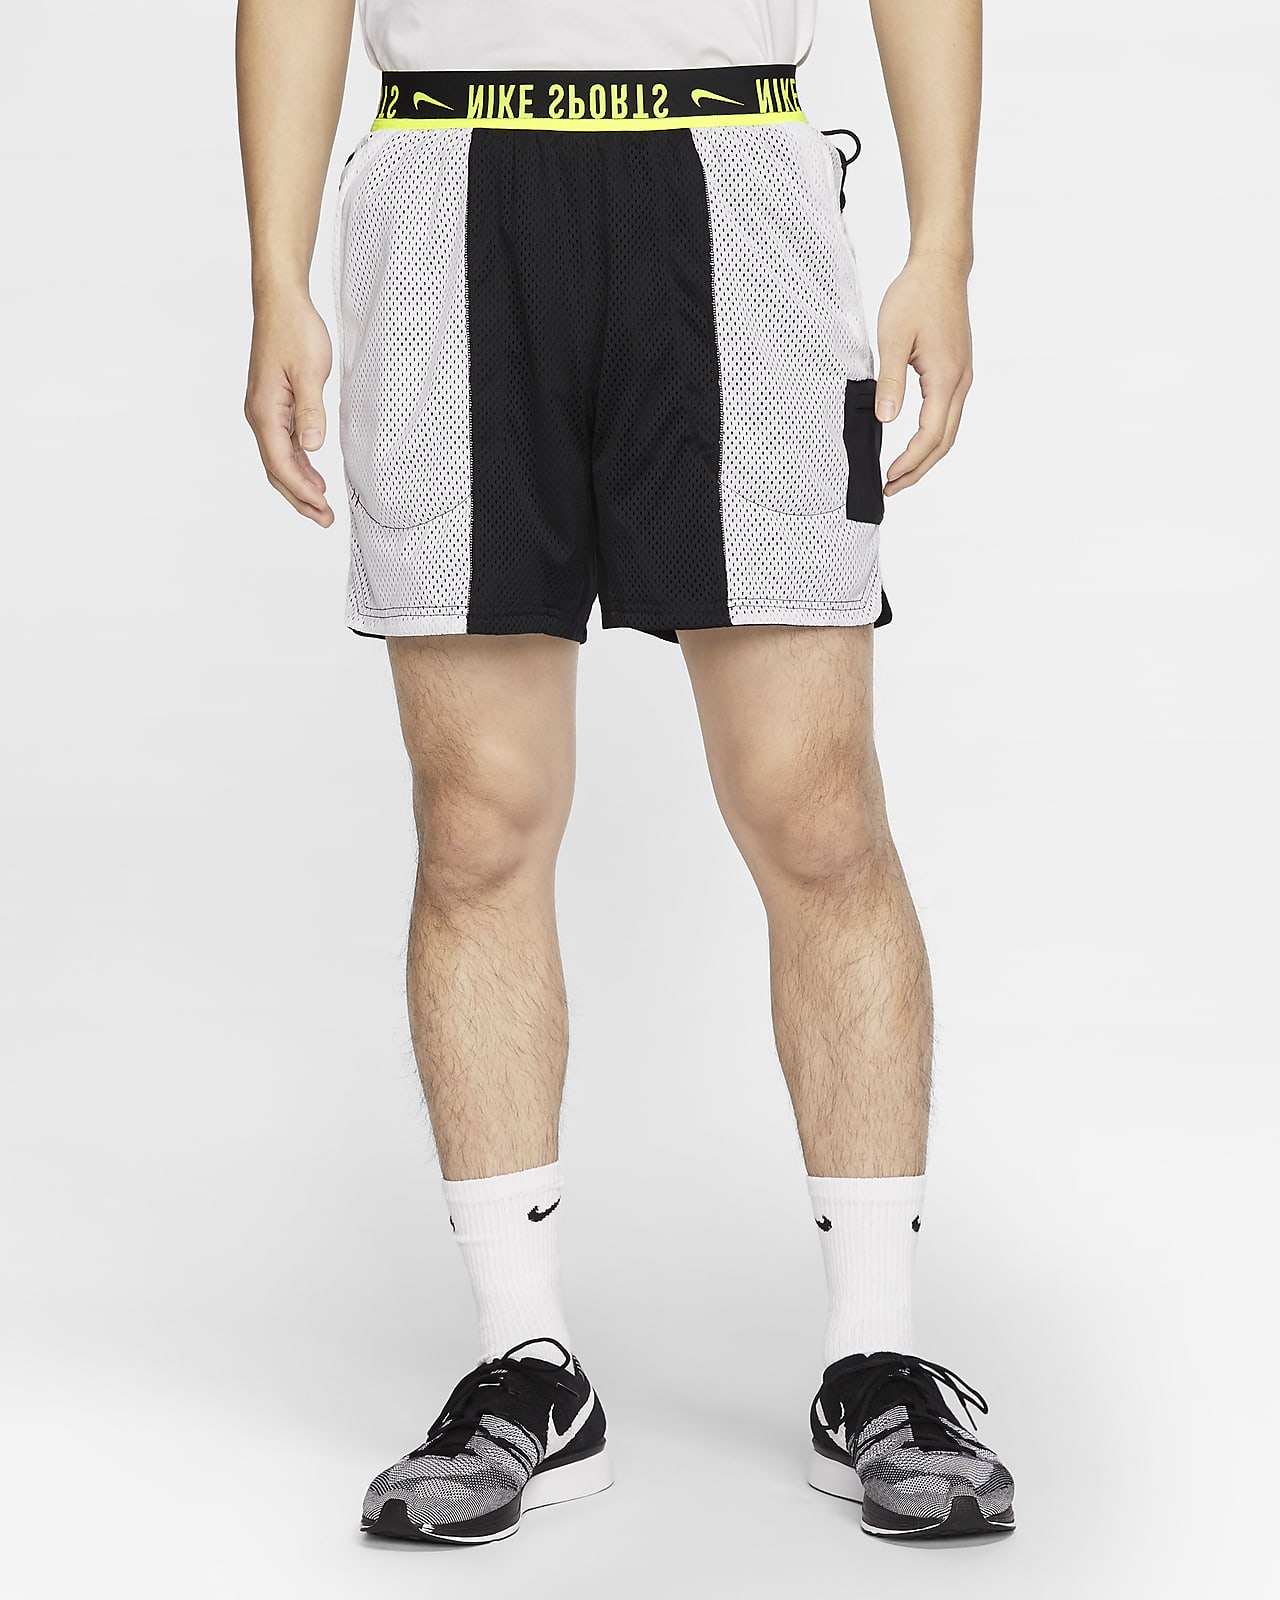 Reversible Training Shorts. Nike ID